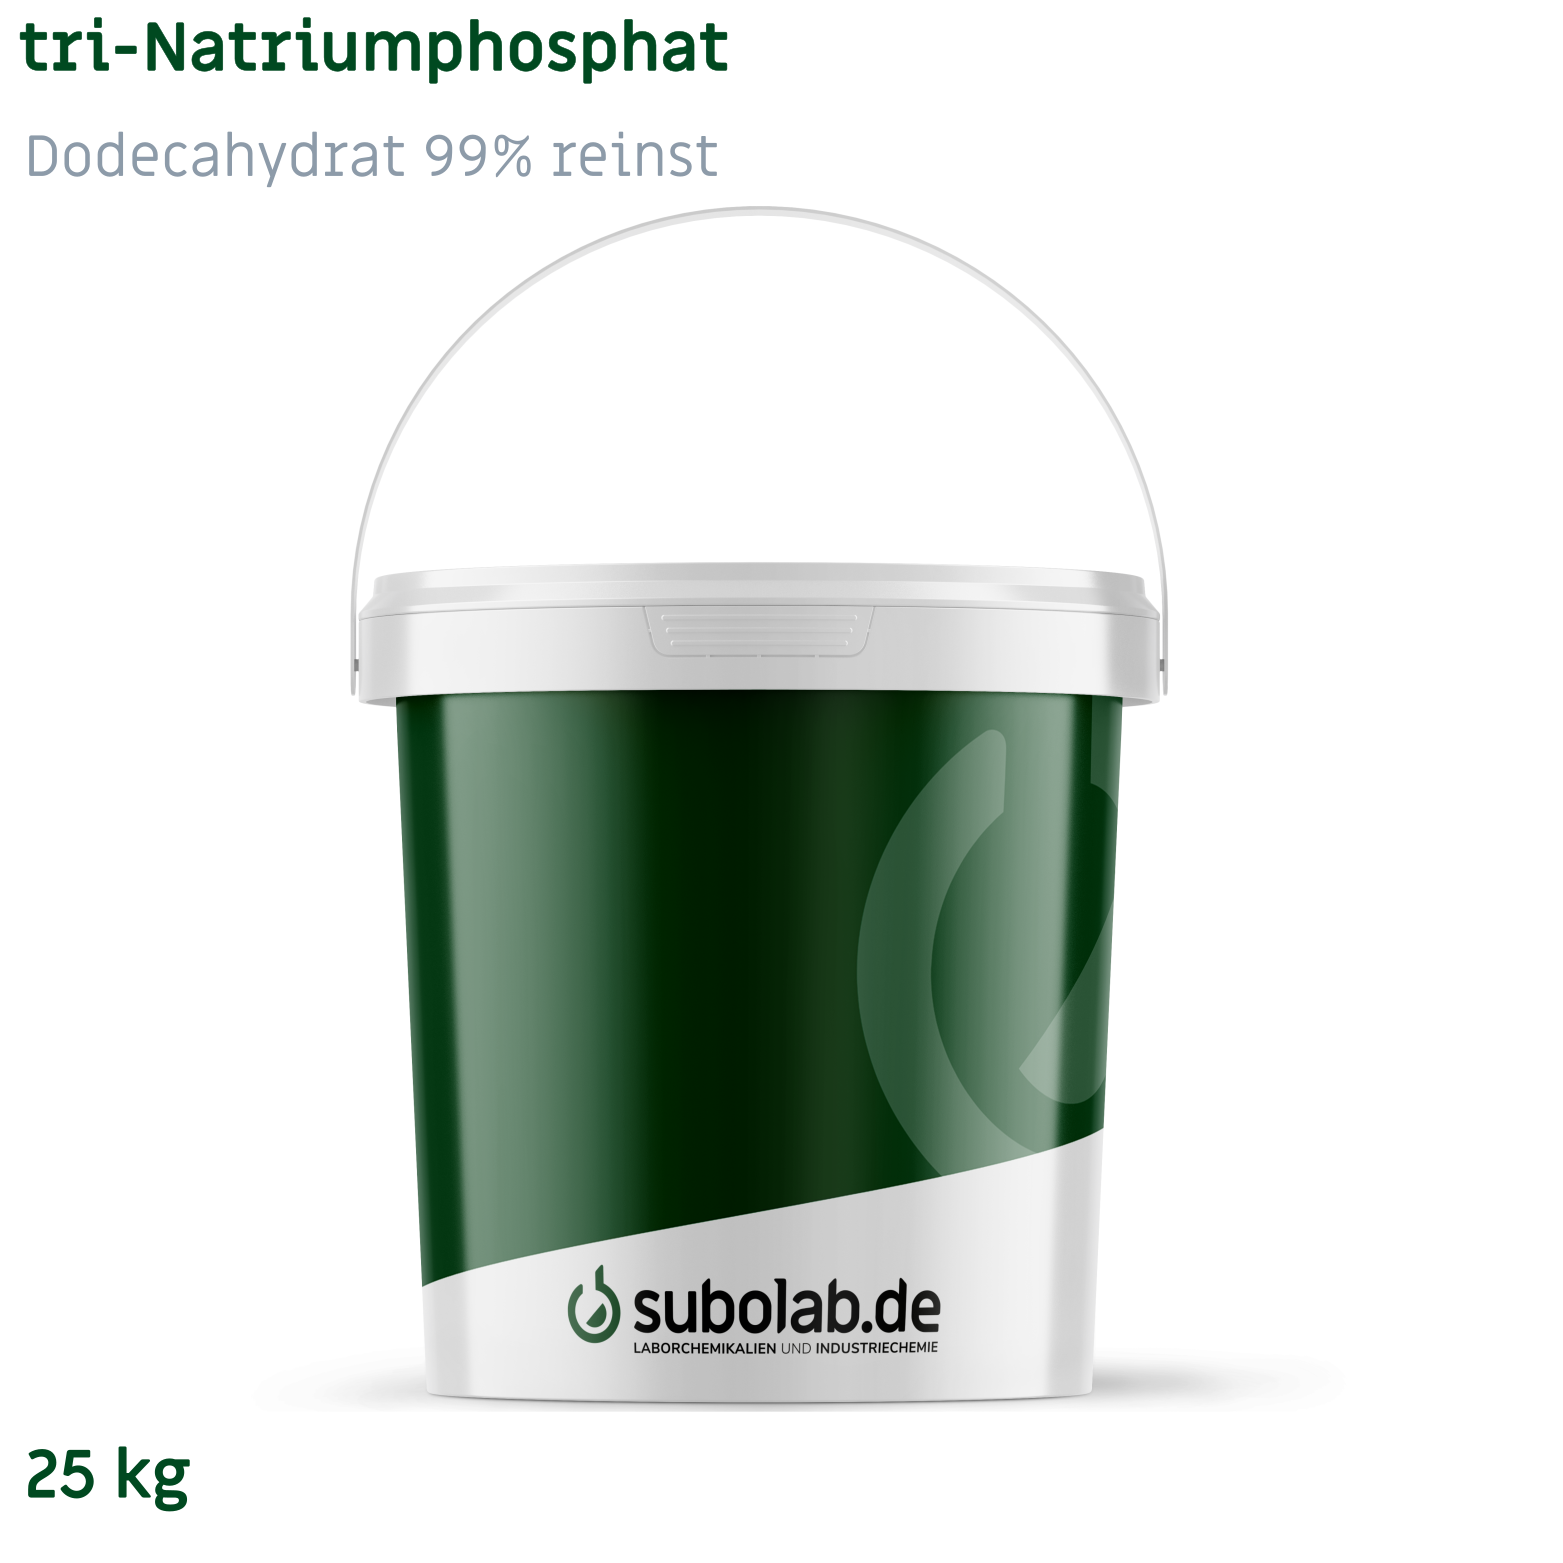 Bild von tri-Natriumphosphat - Dodecahydrat 99% reinst (25 kg)